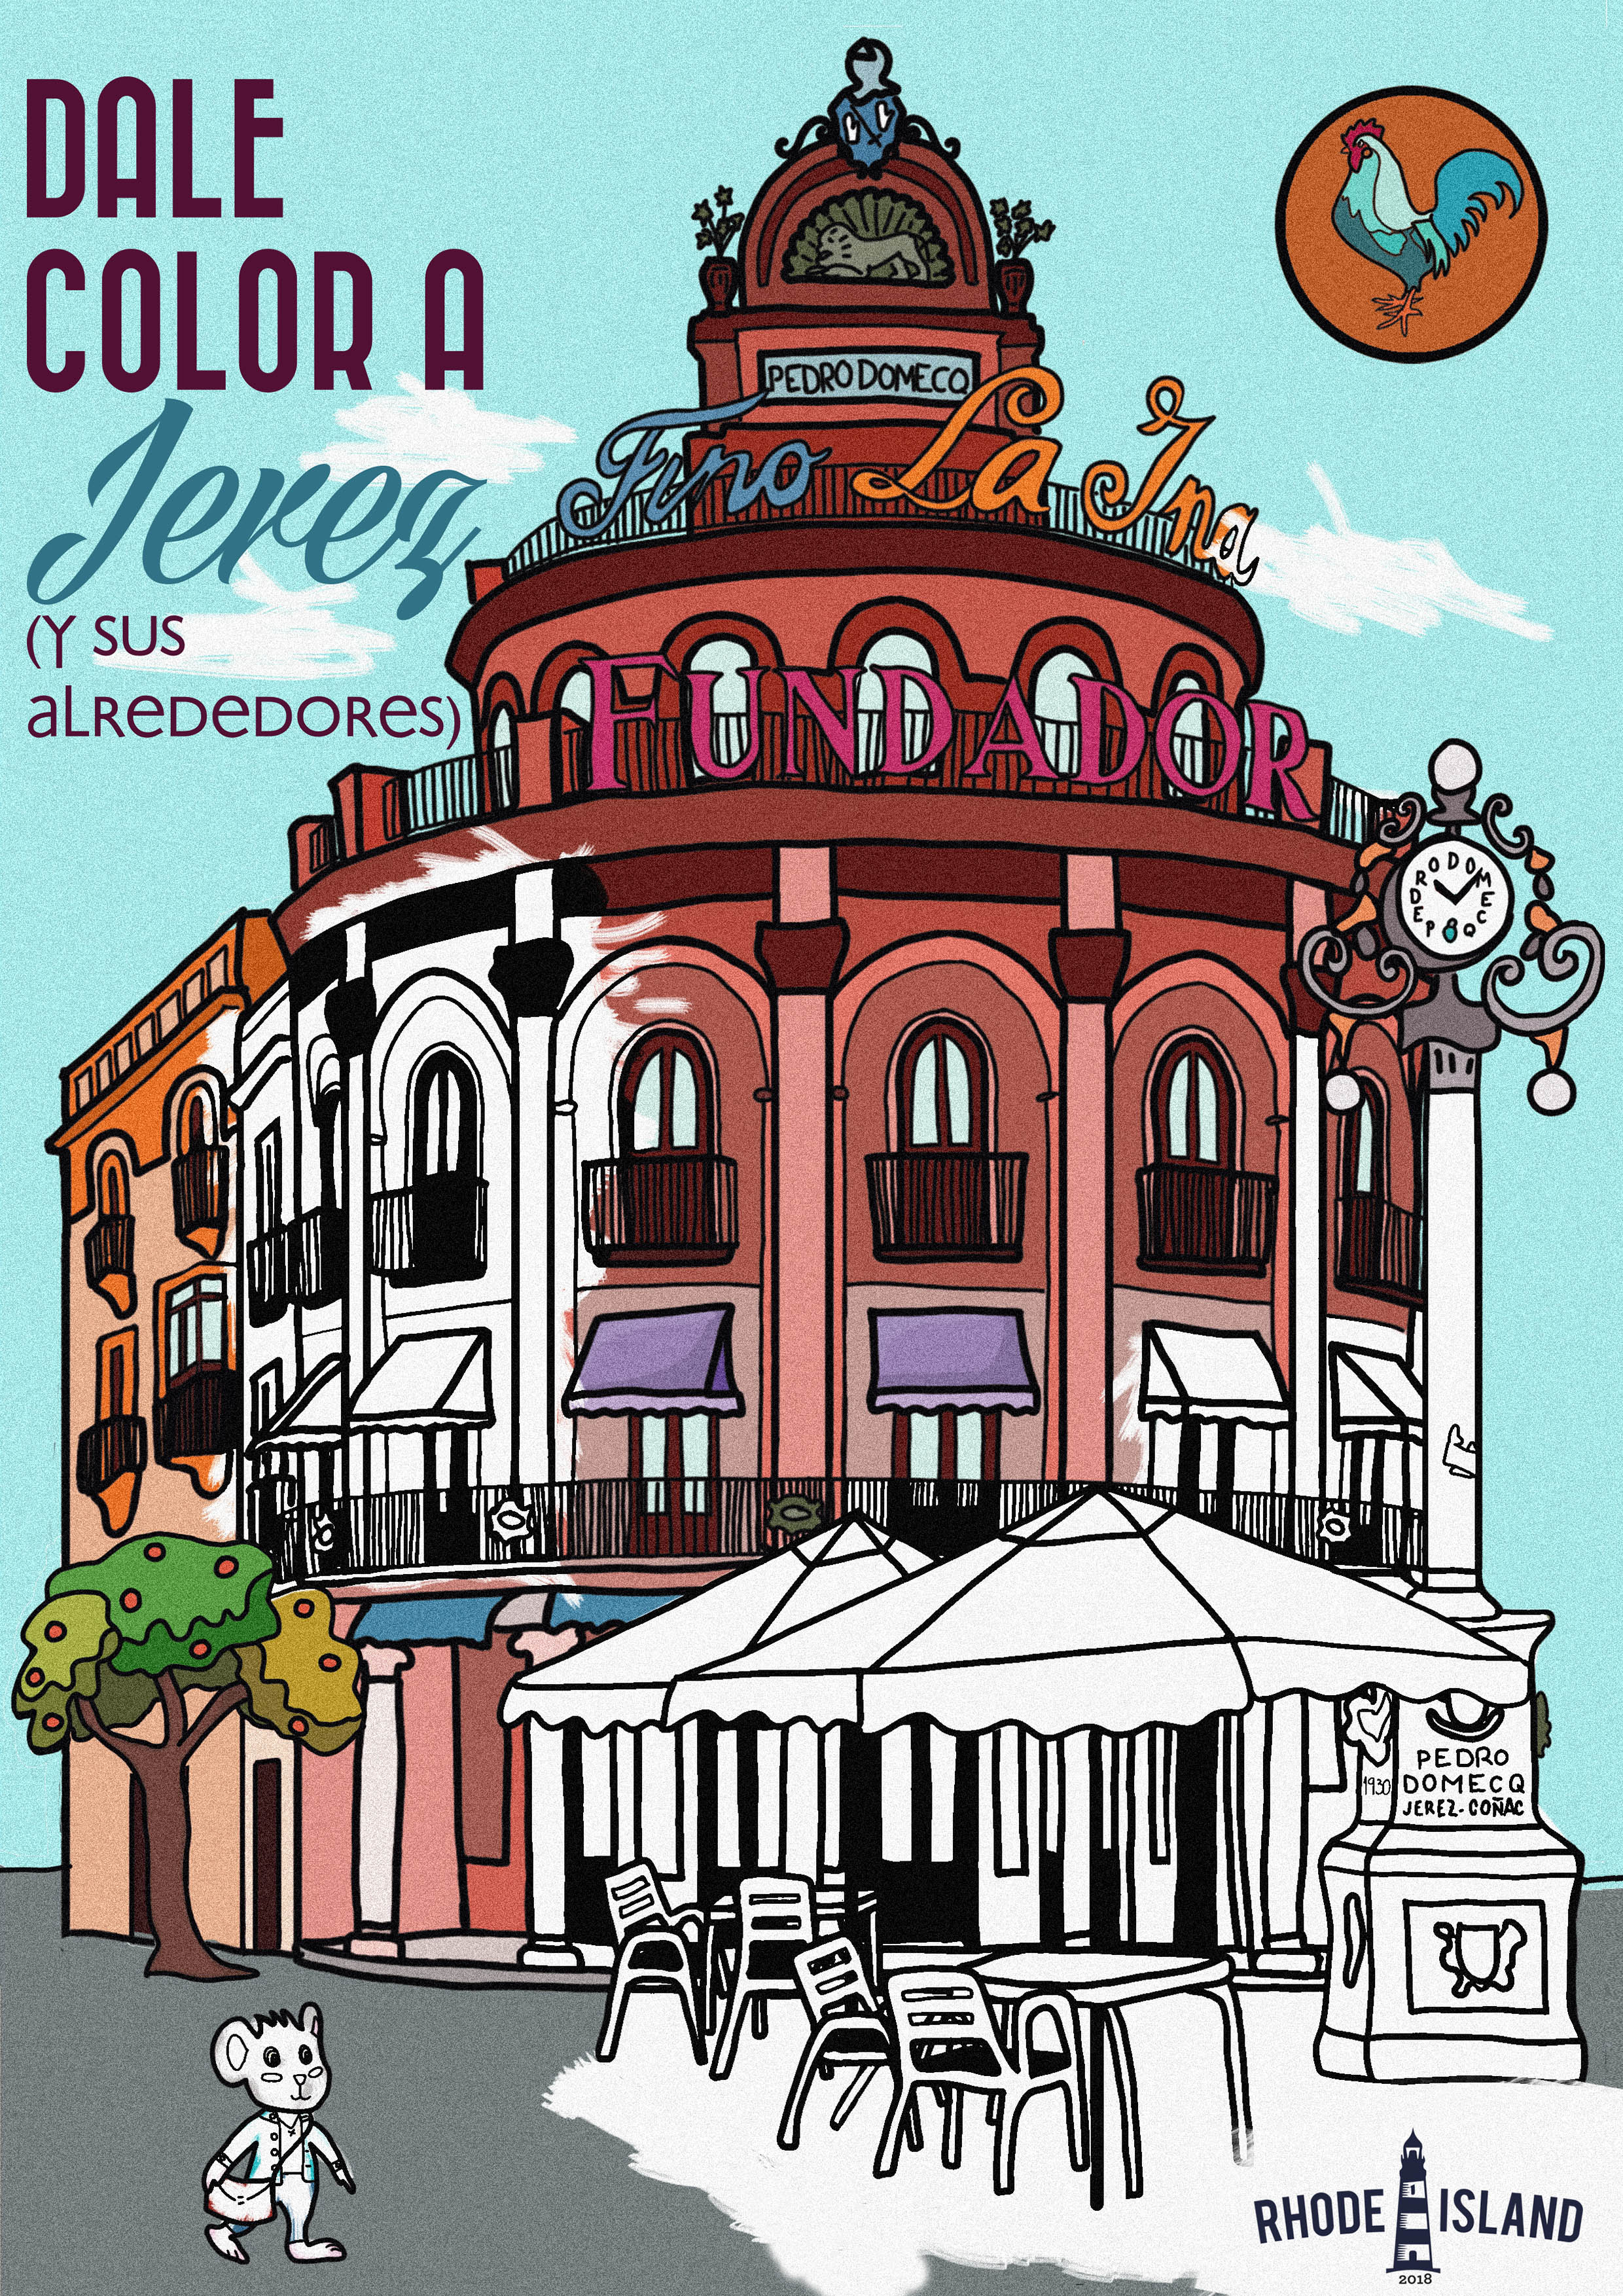 Dale color a Jerez (y sus alrededores)